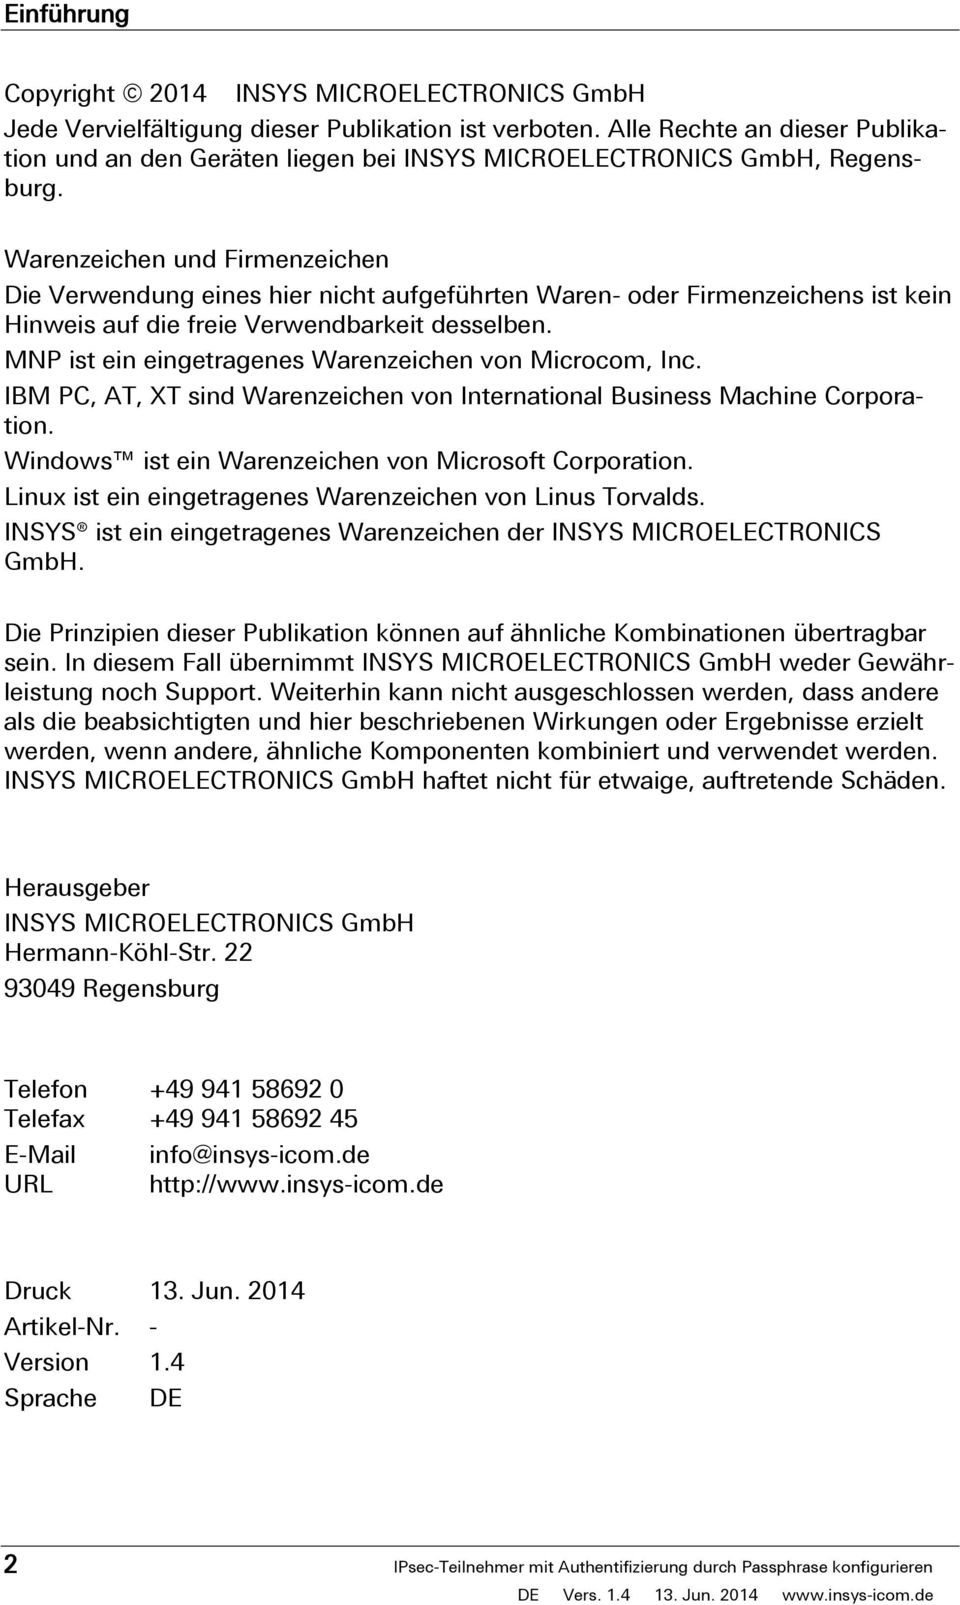 Alle Rechte an dieser Publikation und an den Geräten liegen bei INSYS MICROELECTRONICS GmbH, Regensburg.